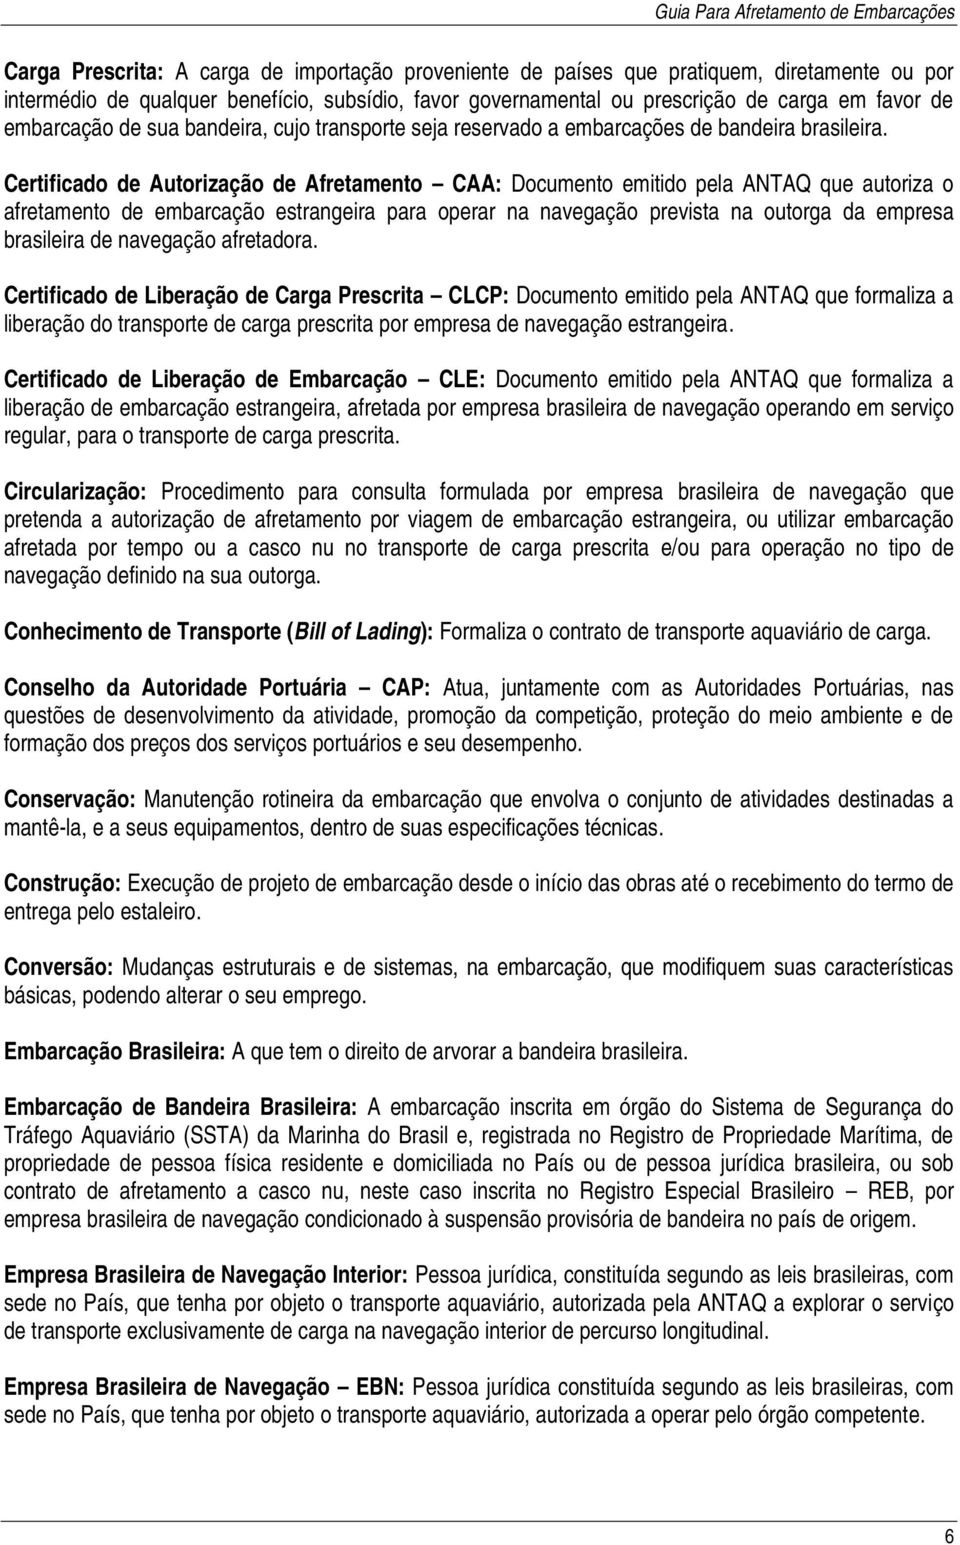 Certificado de Autorização de Afretamento CAA: Documento emitido pela ANTAQ que autoriza o afretamento de embarcação estrangeira para operar na navegação prevista na outorga da empresa brasileira de